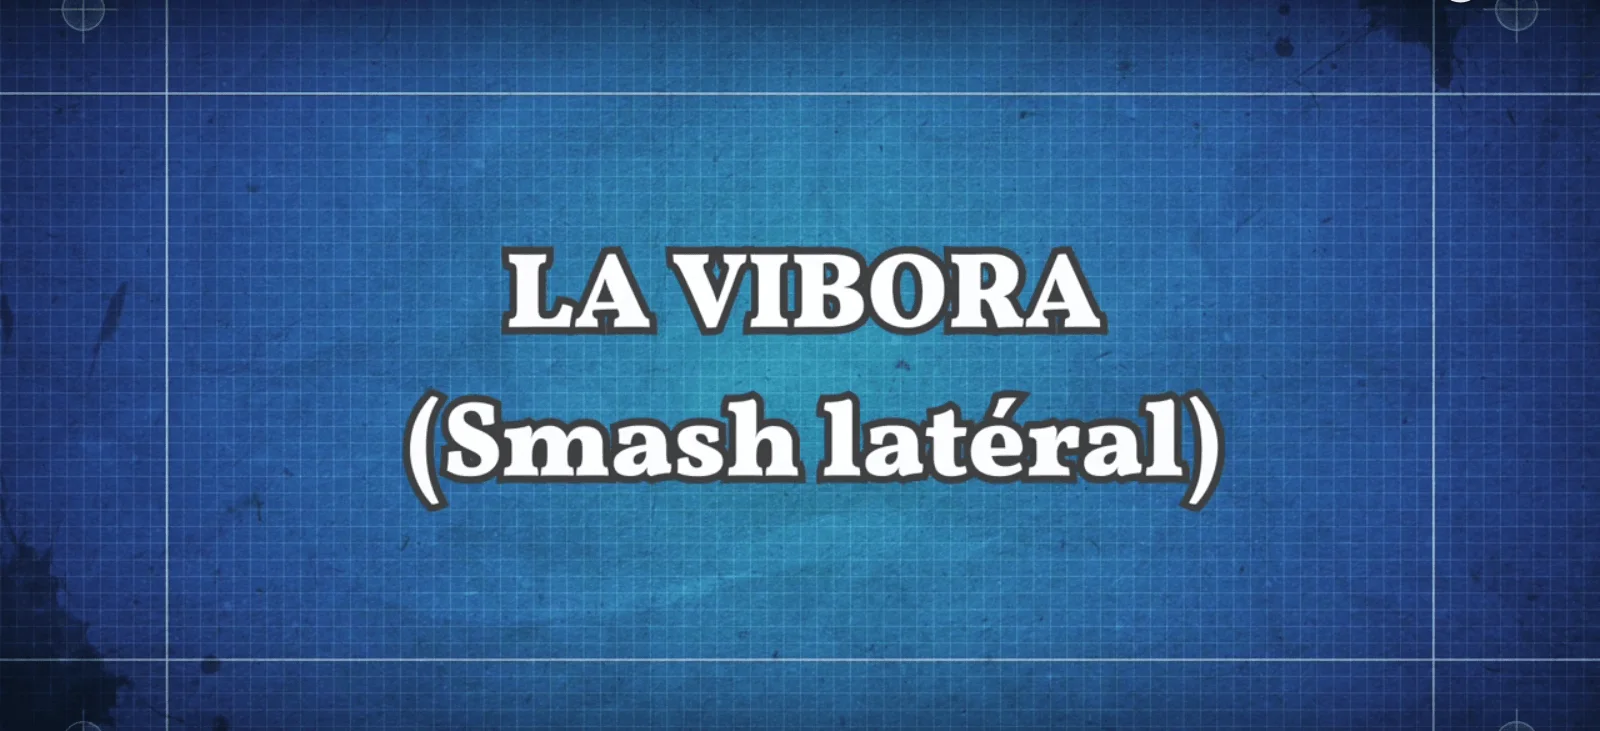 La vibora (Side smash)